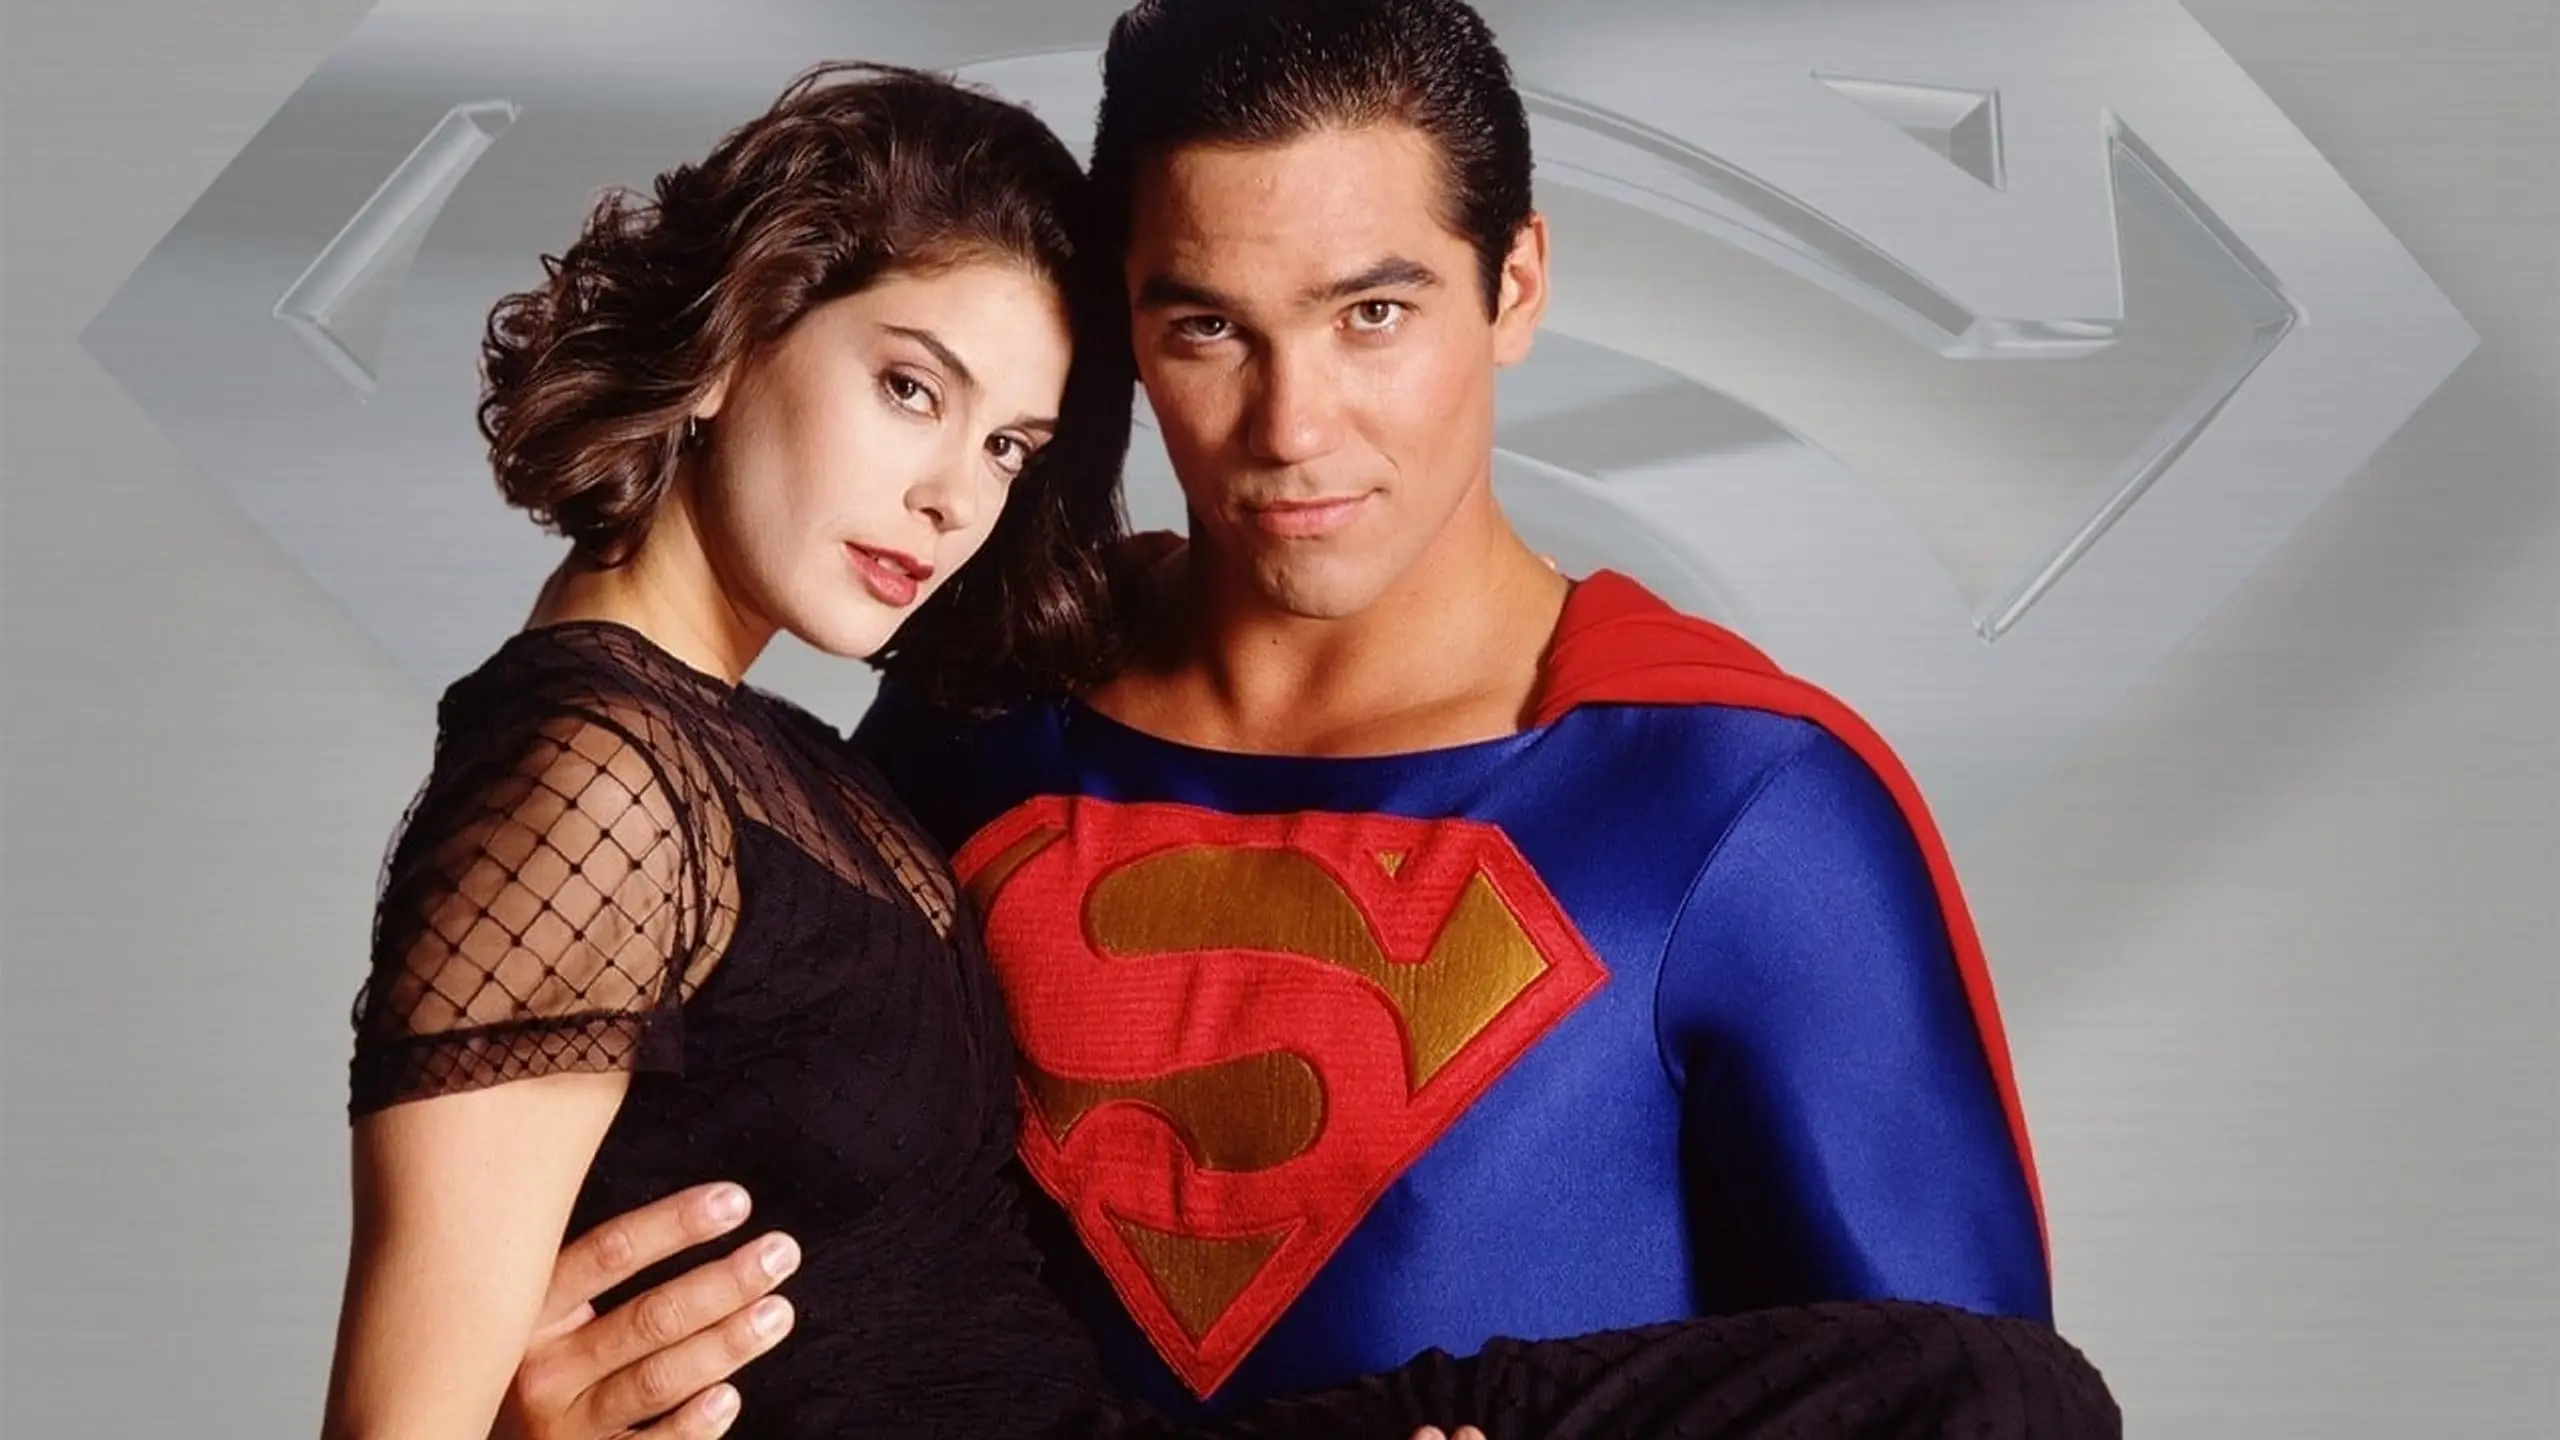 Superman – Die Abenteuer von Lois & Clark